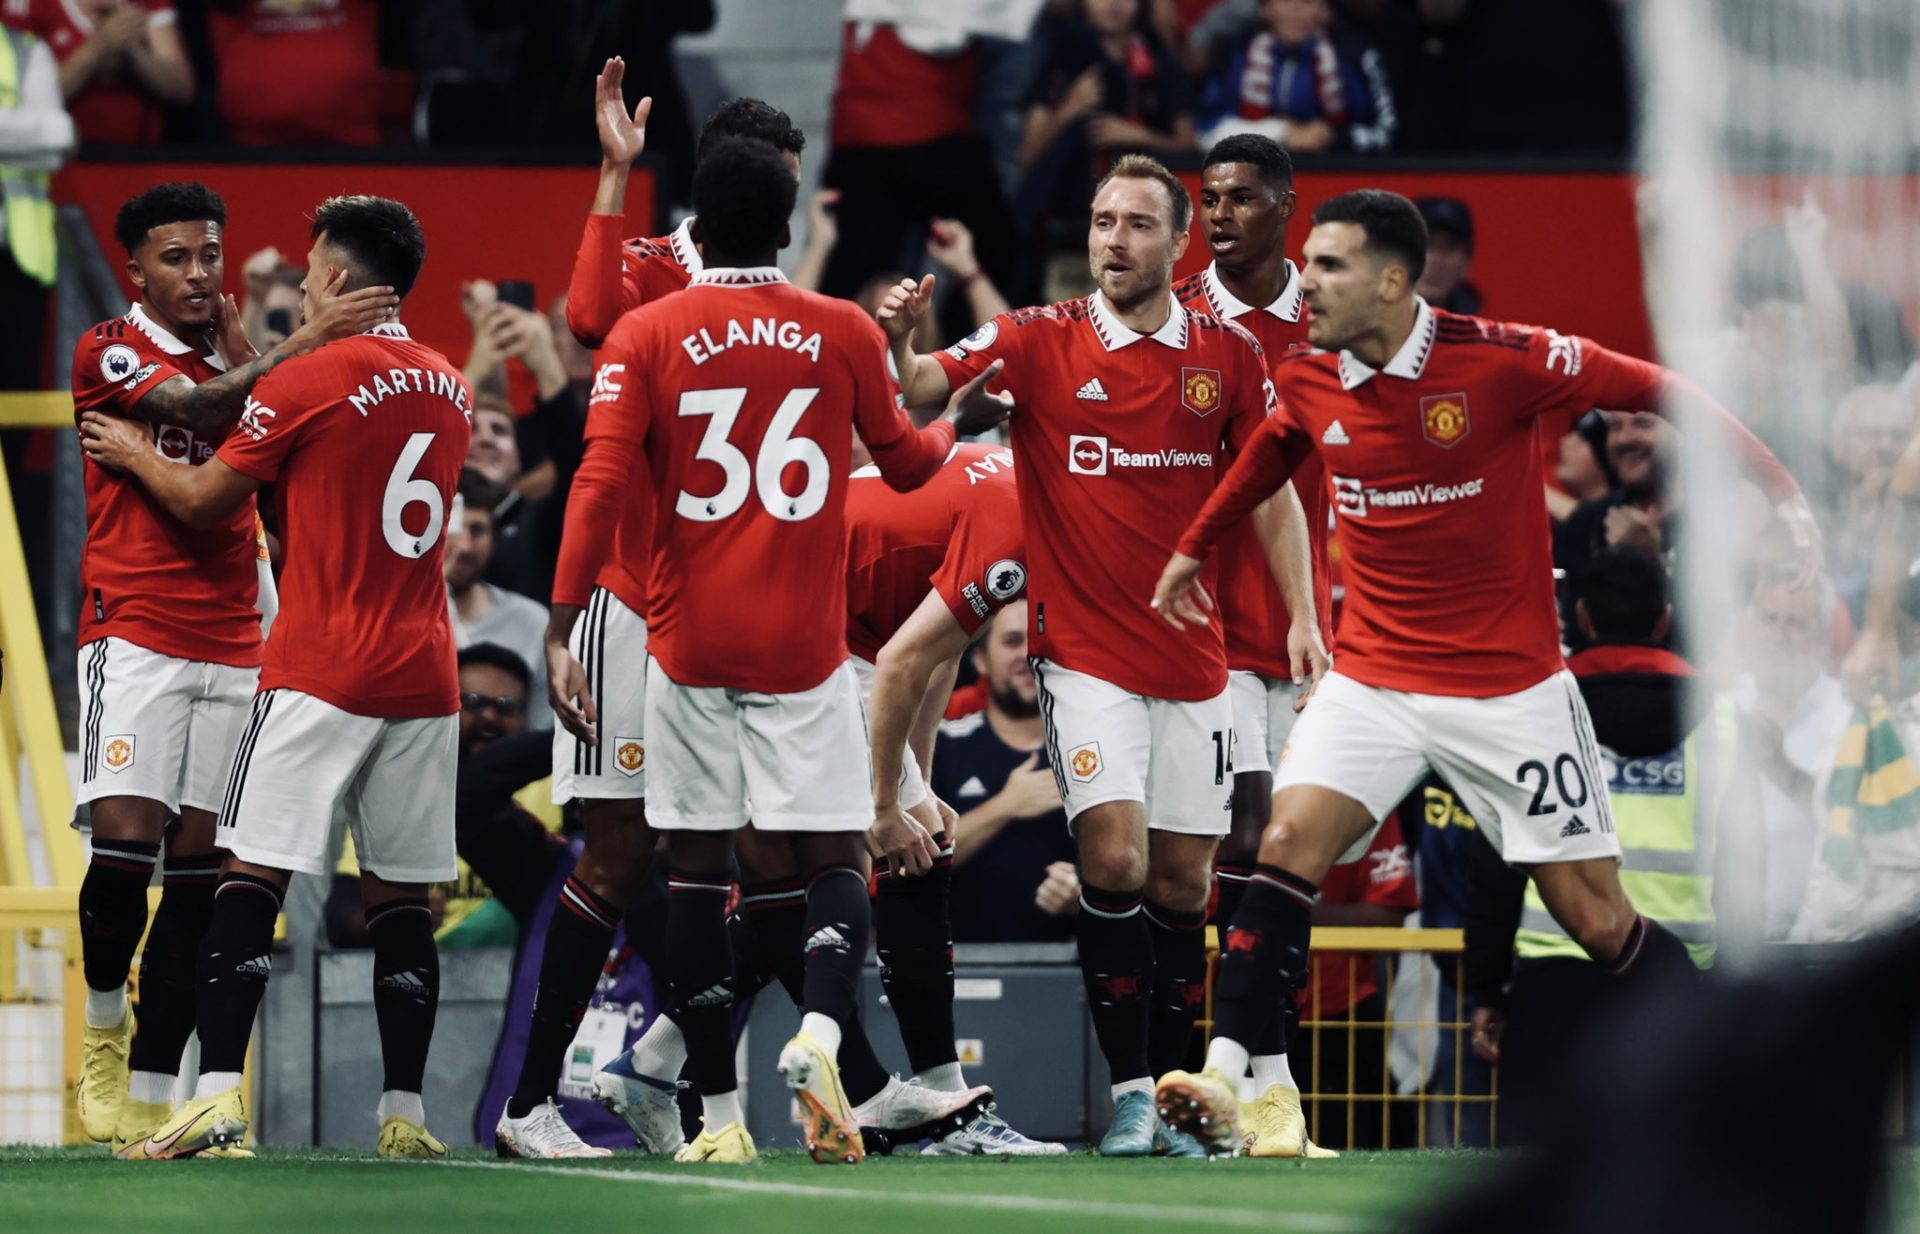 Vídeo: Manchester United recupera la memoria y vence al Liverpool